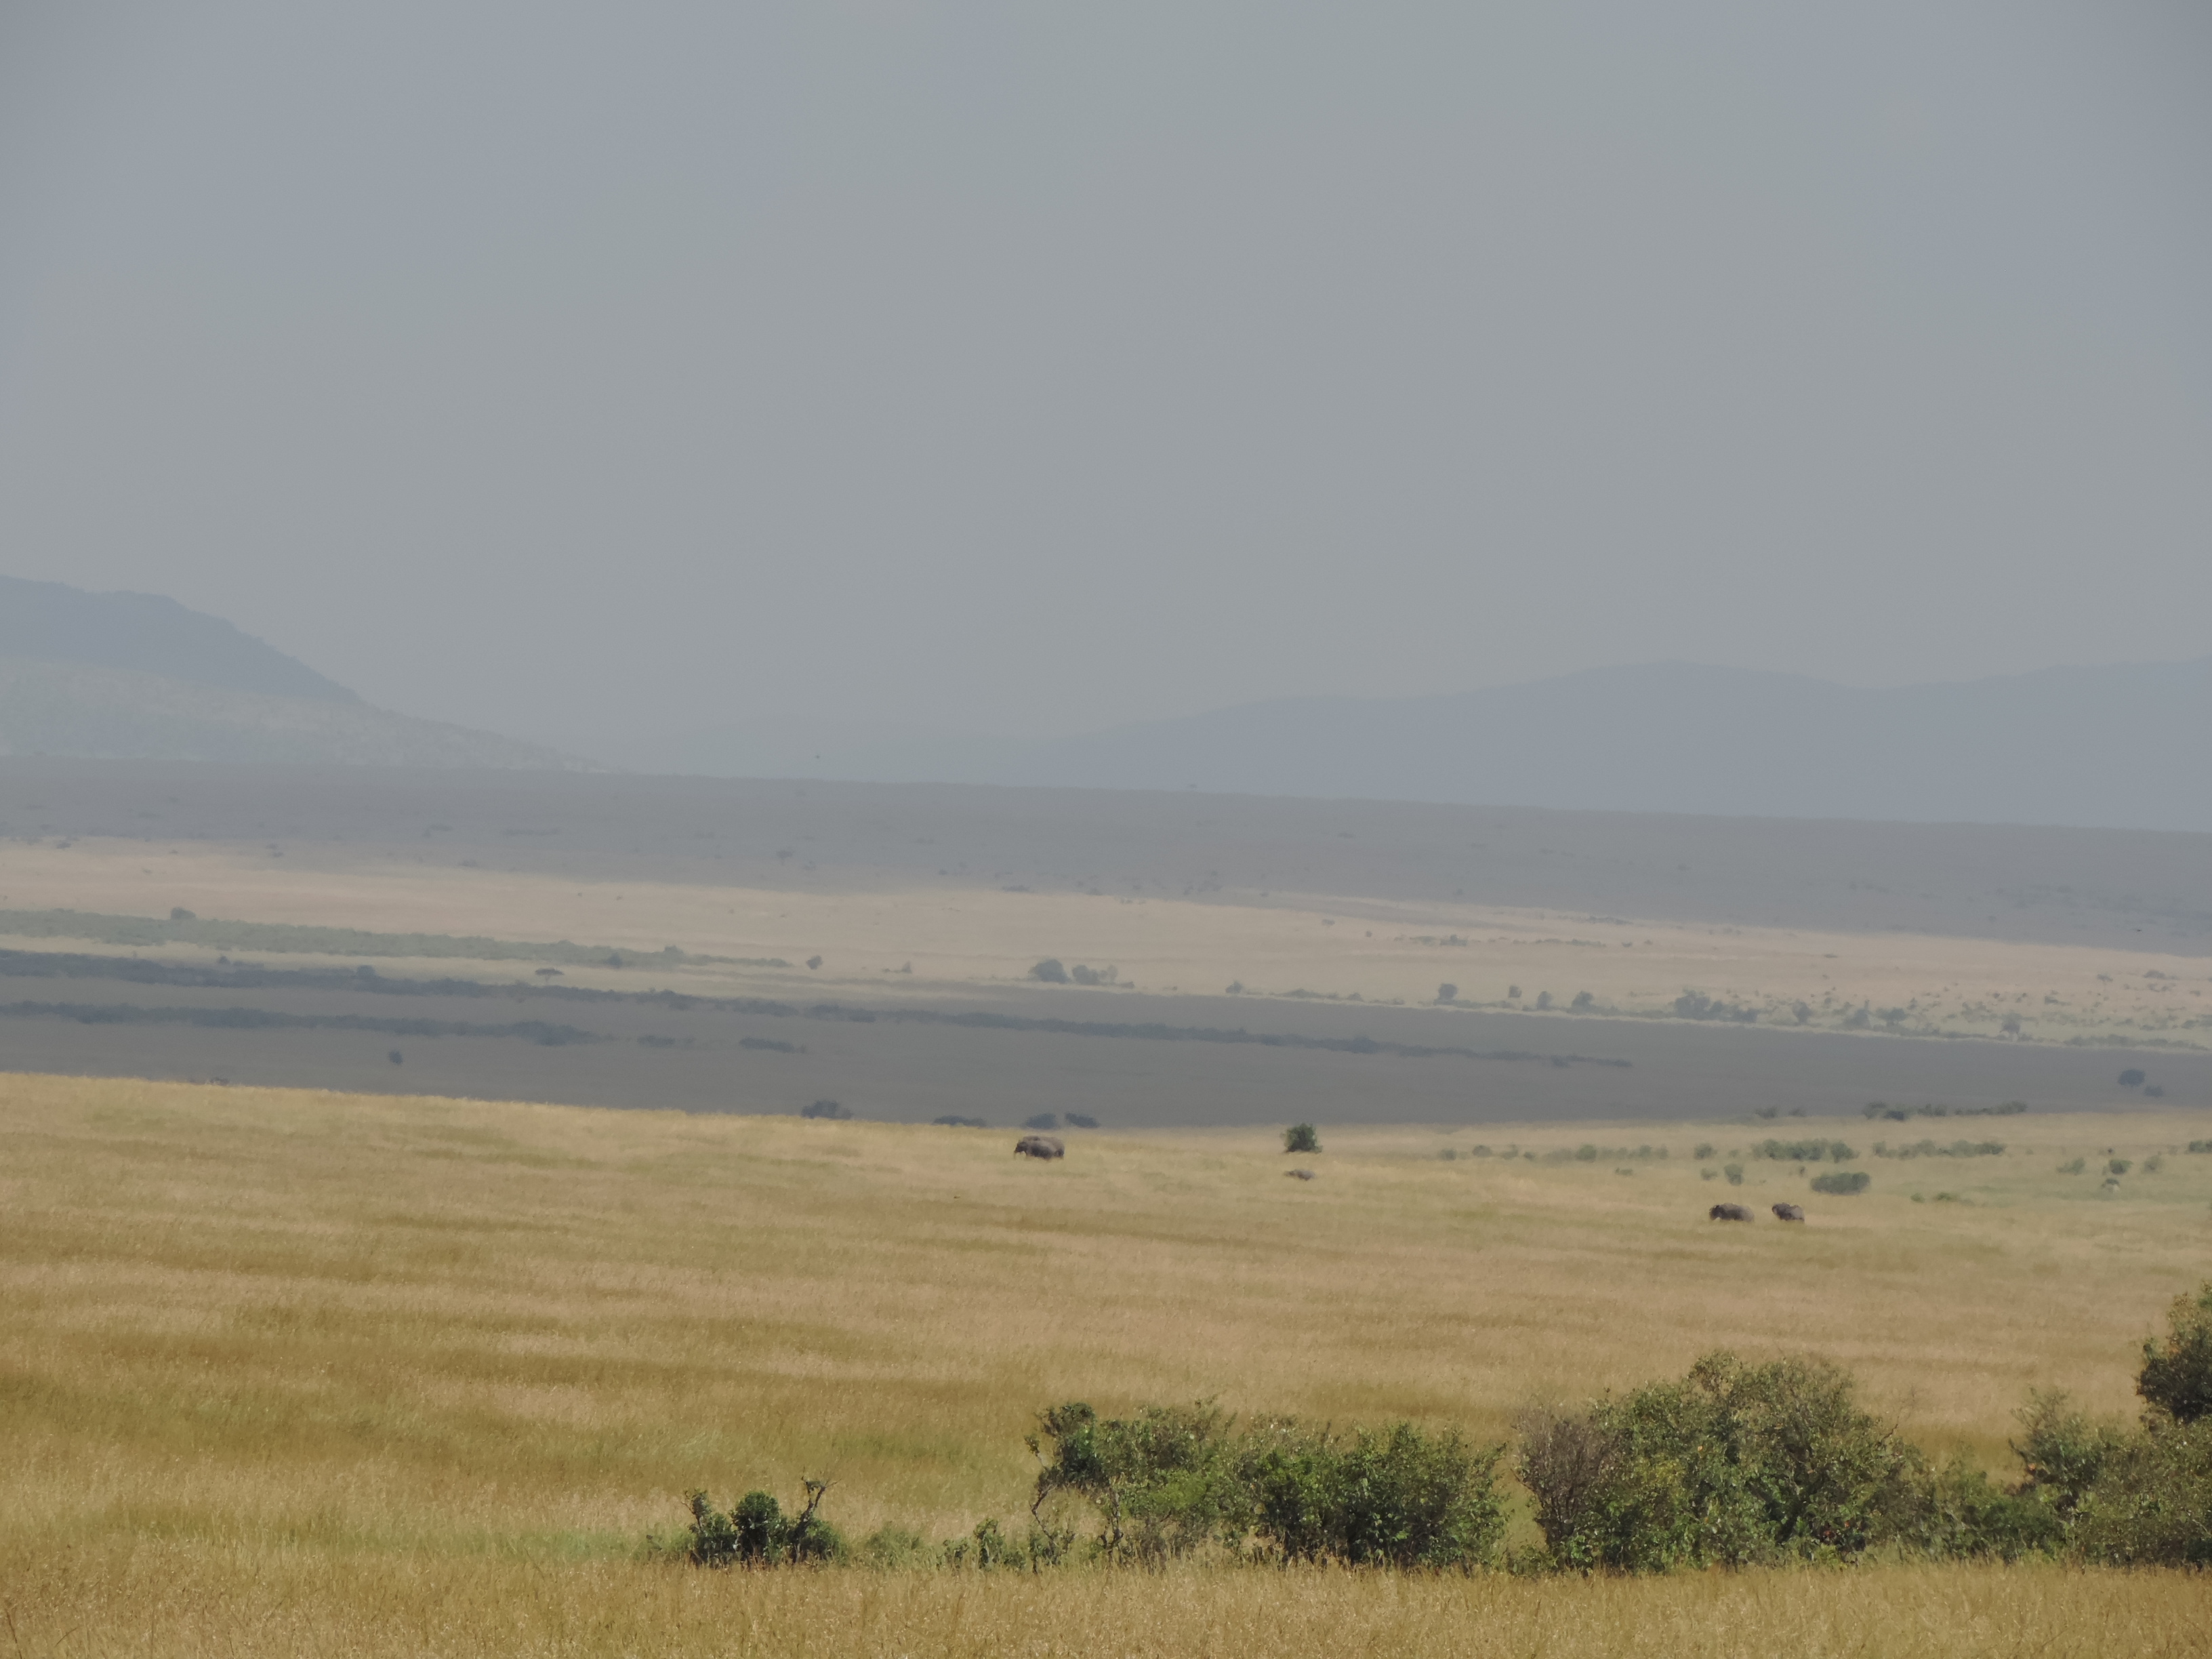  Kenya Adventure Safaris/YHA Kenya Travel Masai Mara Camping Tours.